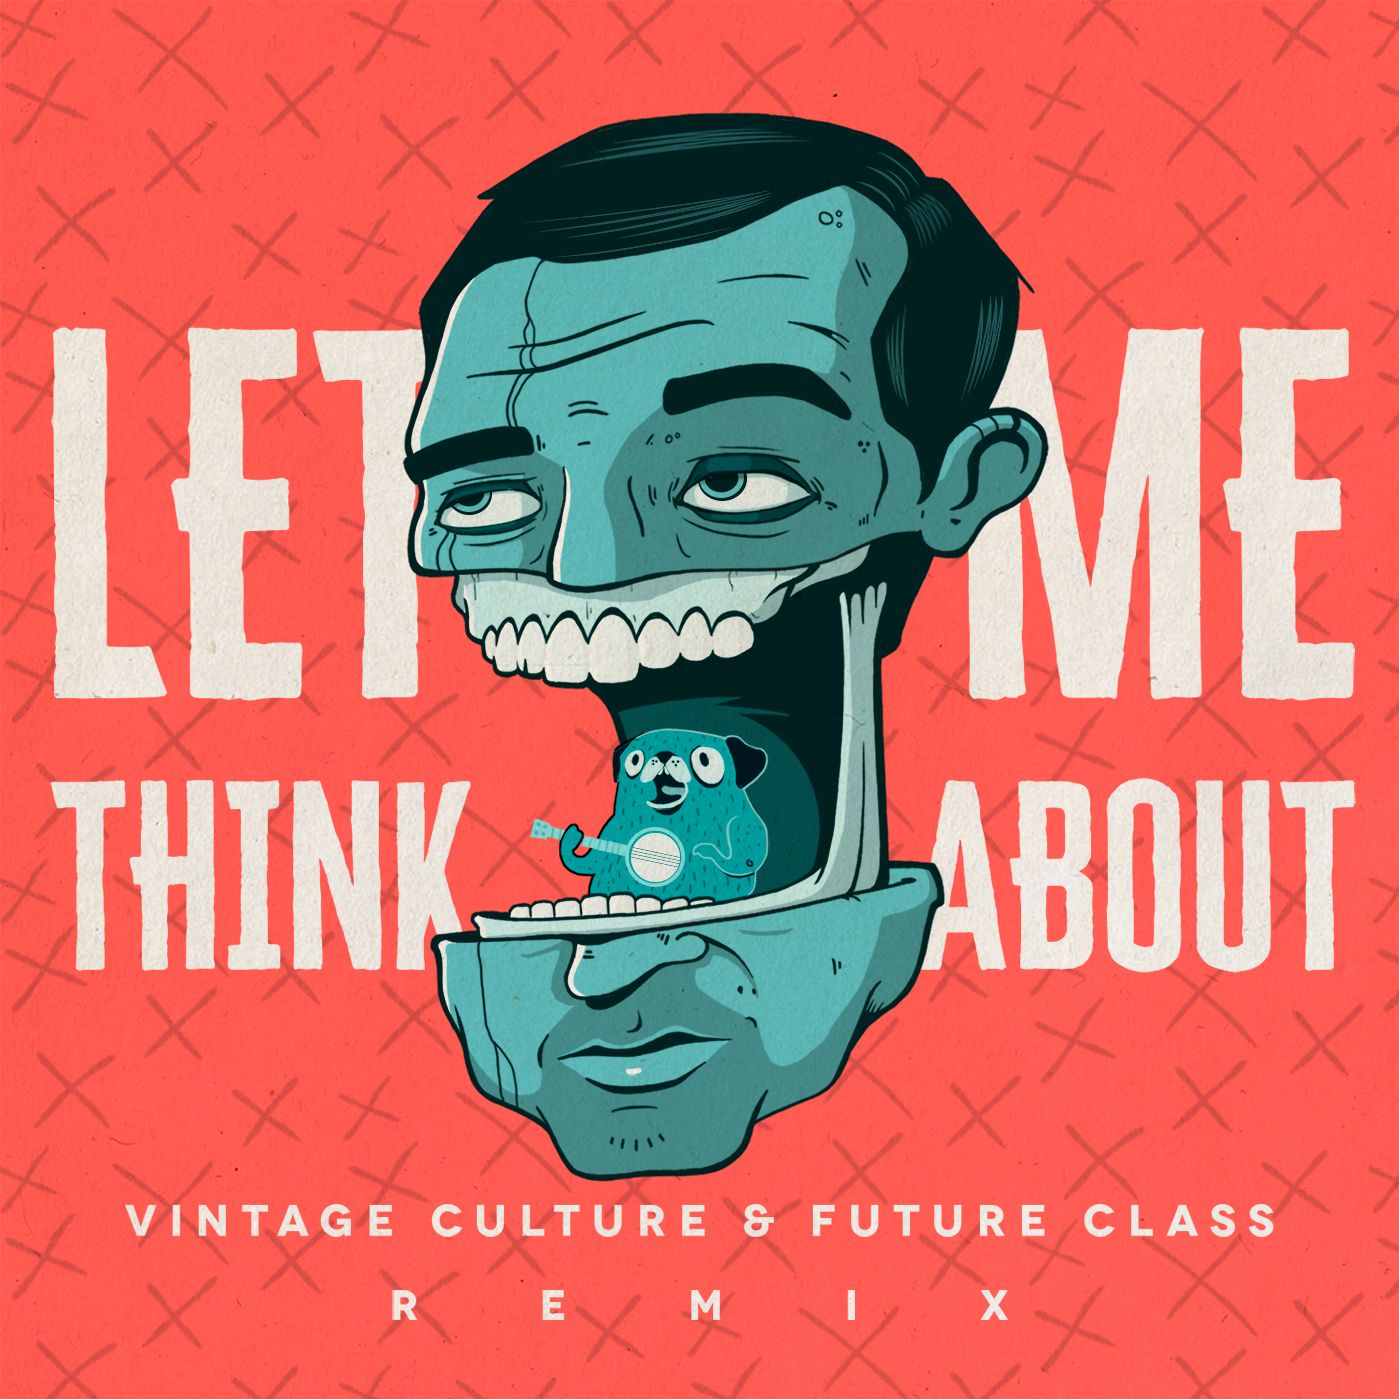 ಡೌನ್ಲೋಡ್ ಮಾಡಿ Vintage Culture & Future Class - Let Me Think About